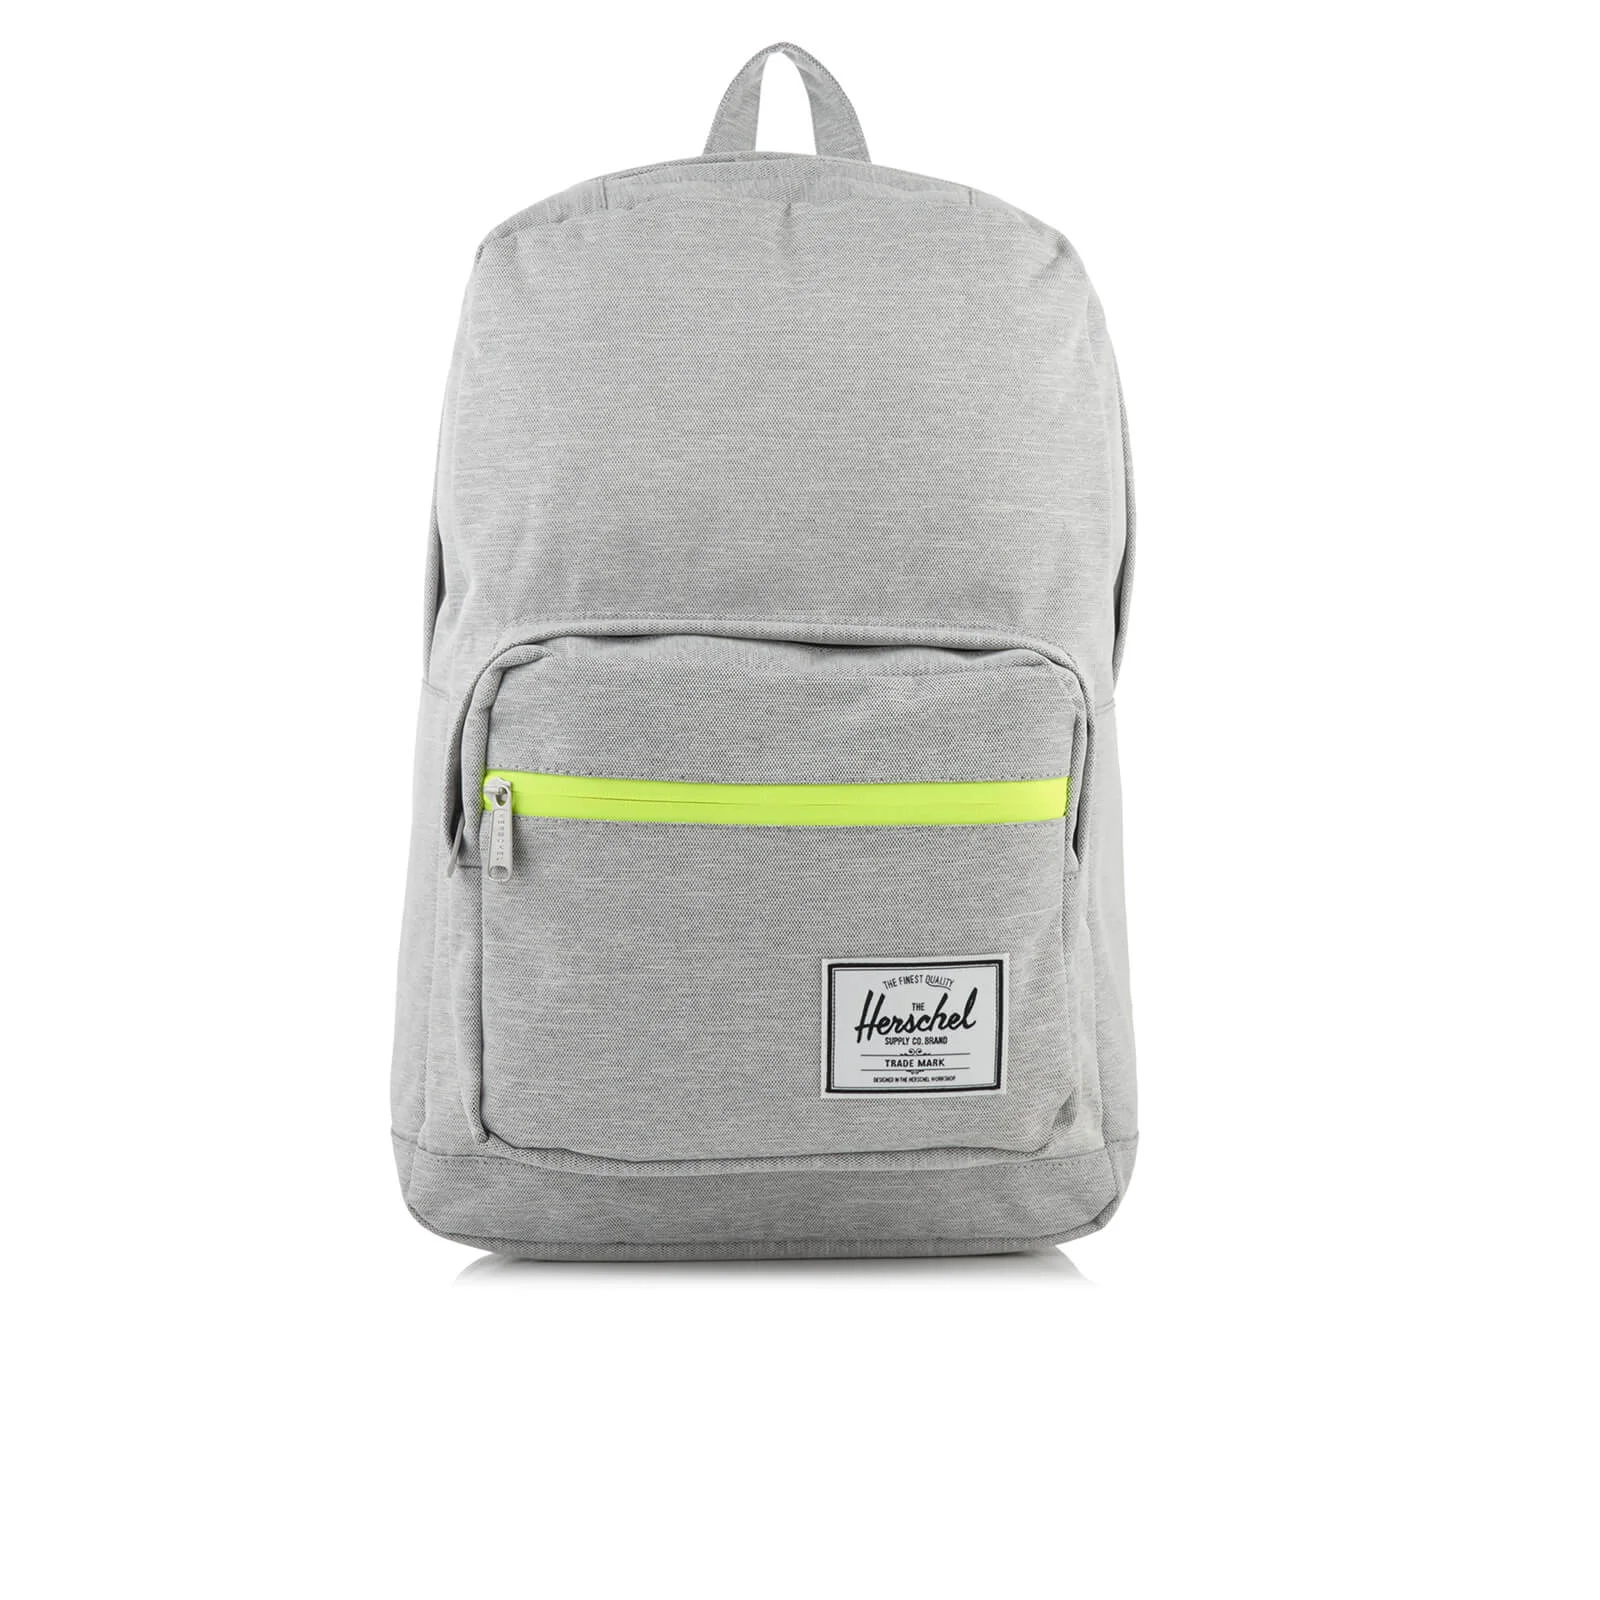 Herschel Supply Co. Pop Quiz Backpack - Light Grey Crosshatch/Acid Lime Zip Image 1